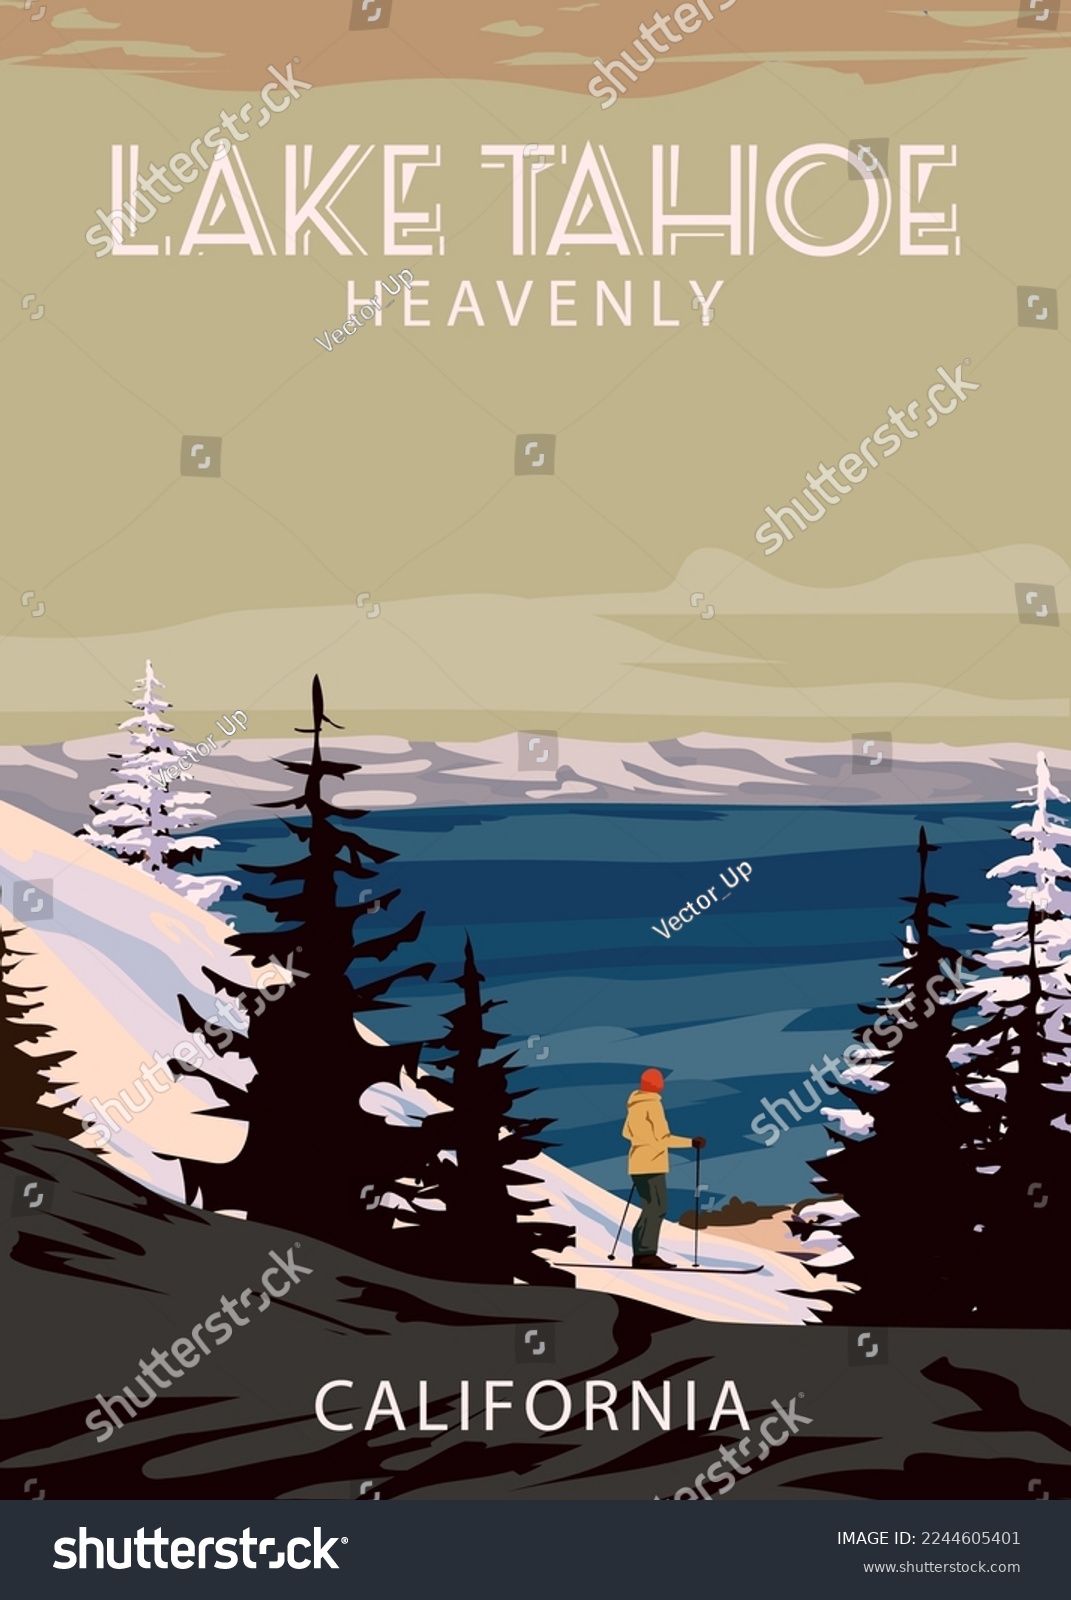 SVG of Ski Travel resort poster vintage Lake Tahoe. California USA winter landscape travel card svg